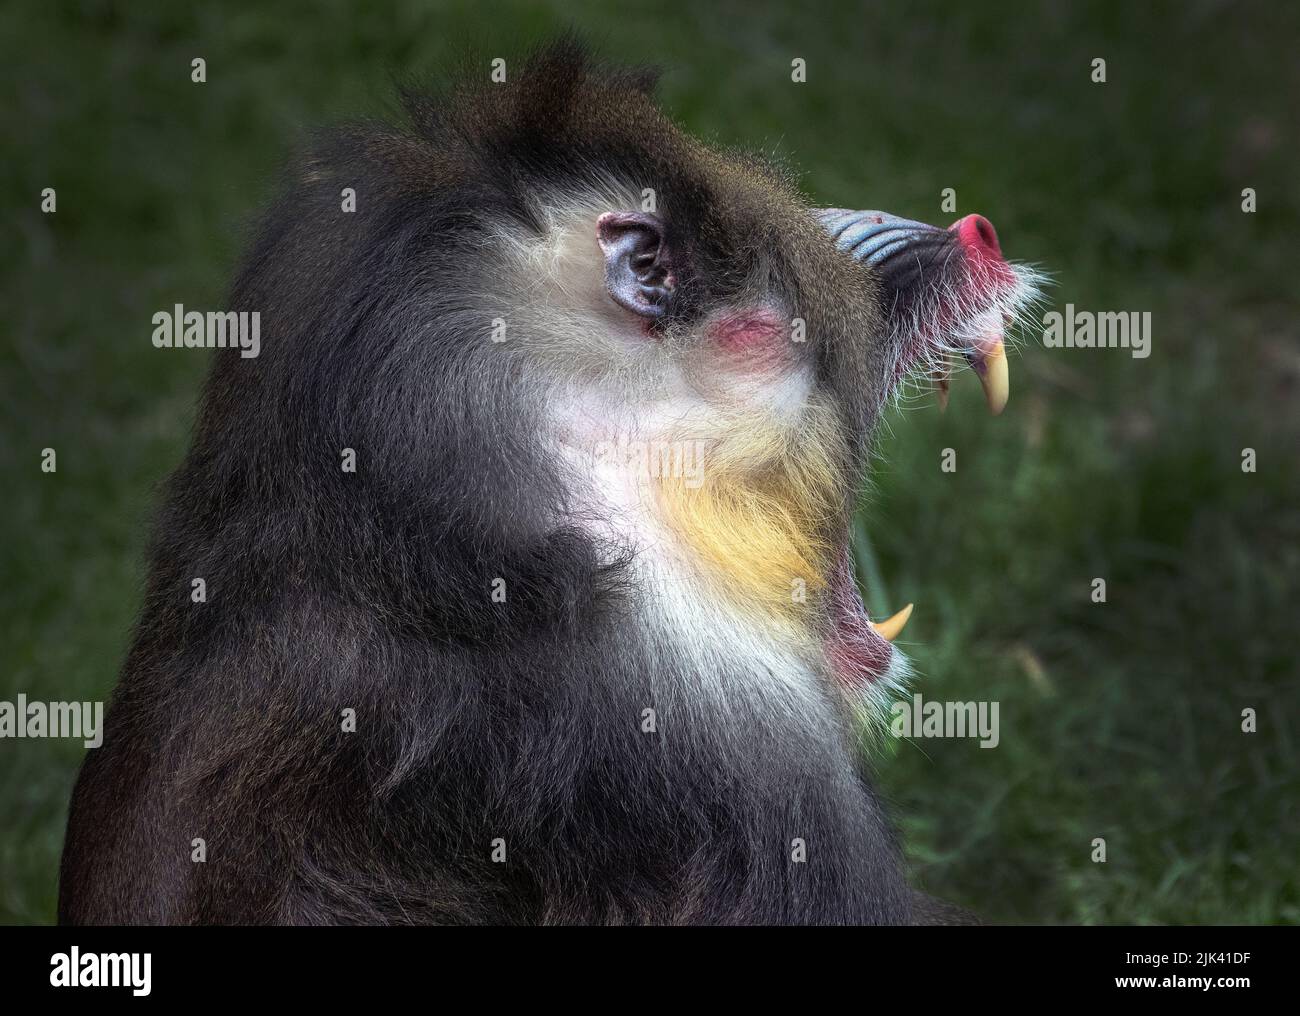 Ángulo lateral de babuino con dientes grandes y cara roja gritando Foto de stock